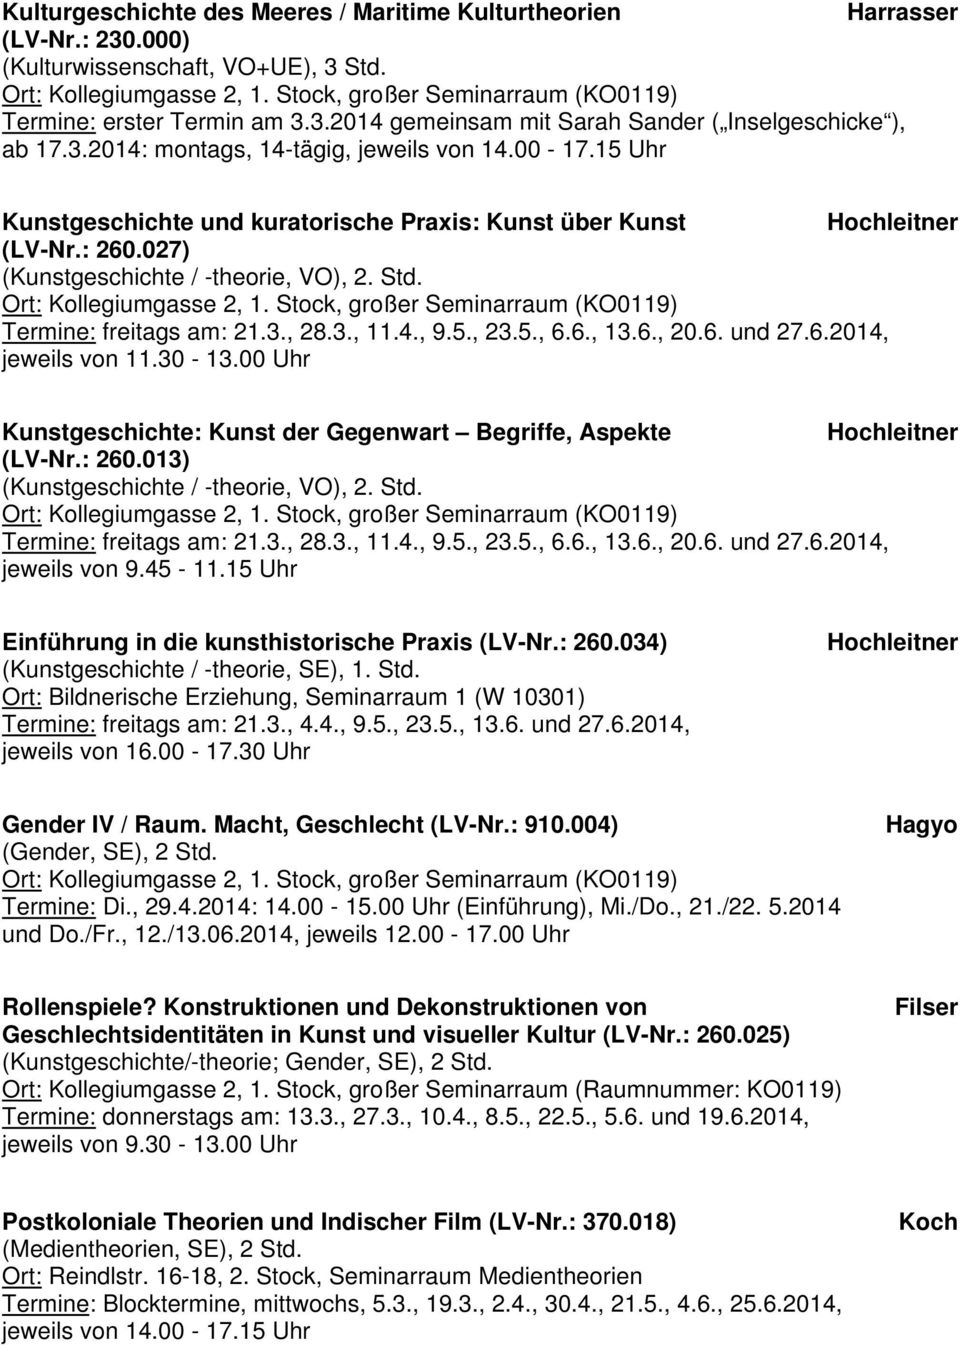 6., 13.6., 20.6. und 27.6.2014, jeweils von 11.30-13.00 Uhr Kunstgeschichte: Kunst der Gegenwart Begriffe, Aspekte Hochleitner (LV-Nr.: 260.013) (Kunstgeschichte / -theorie, VO), 2. Std.